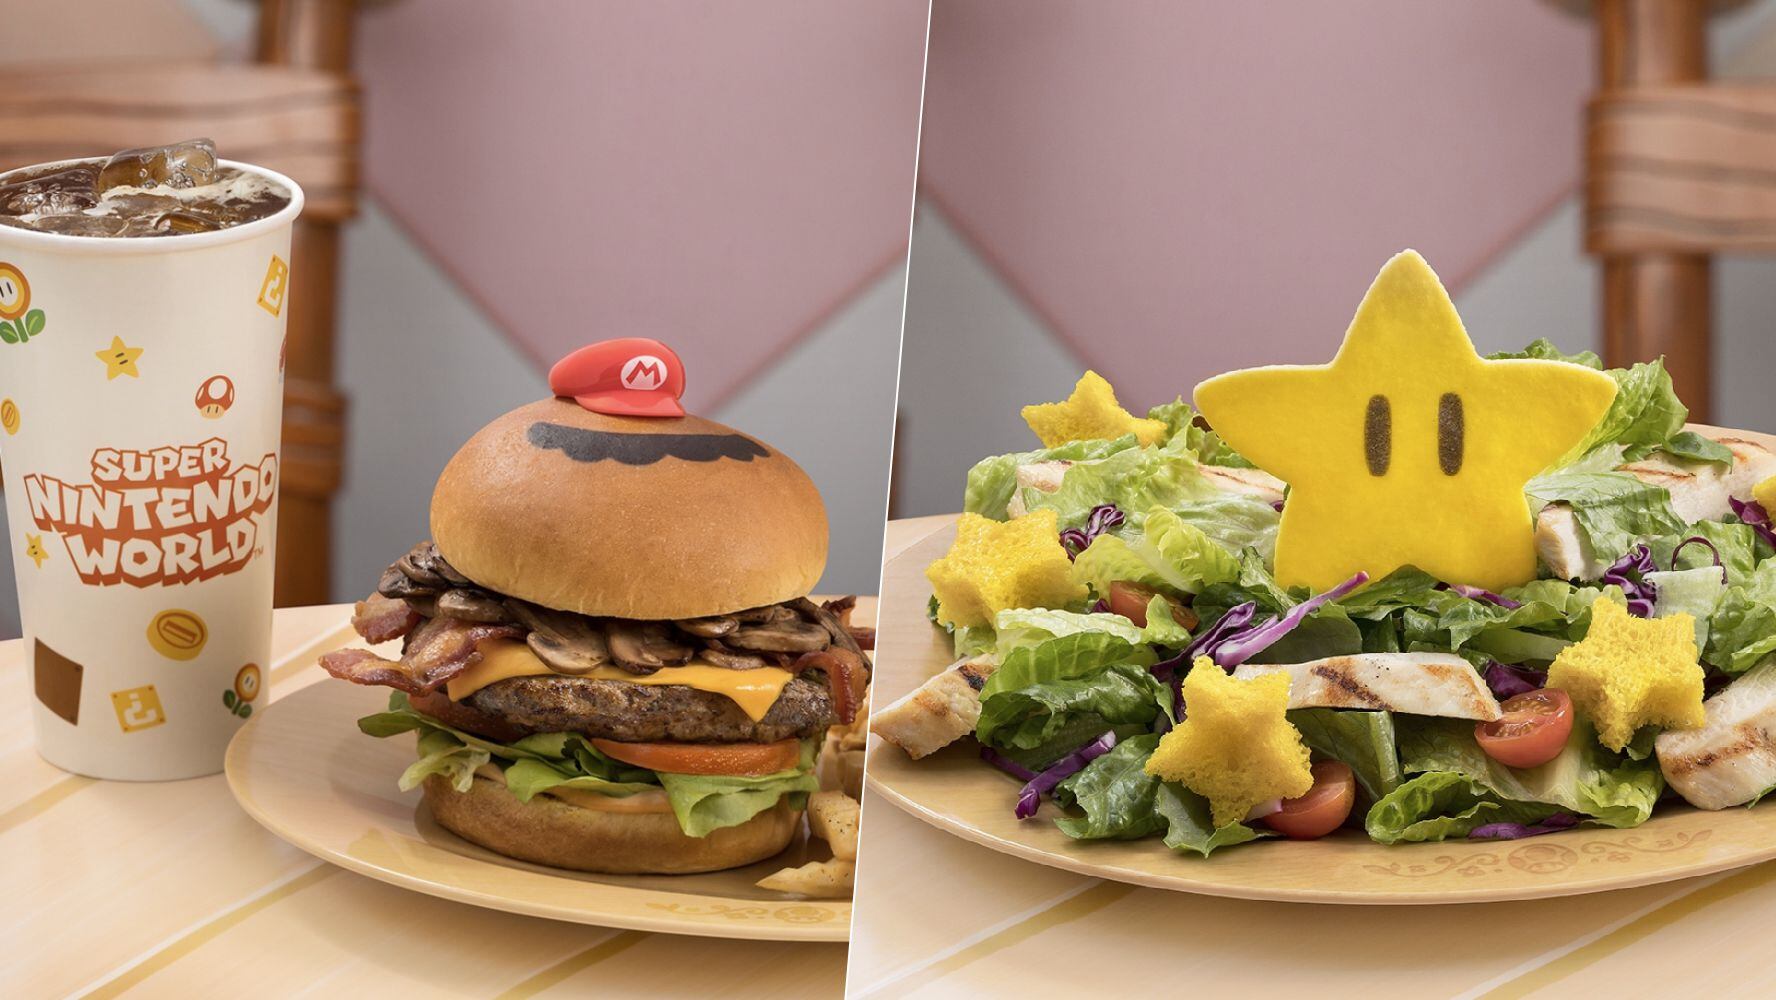 El 'Super Nintendo World' oferta comida basada en los juegos de 'Mario Bros.'. (Foto: Instagram / @unistudios)